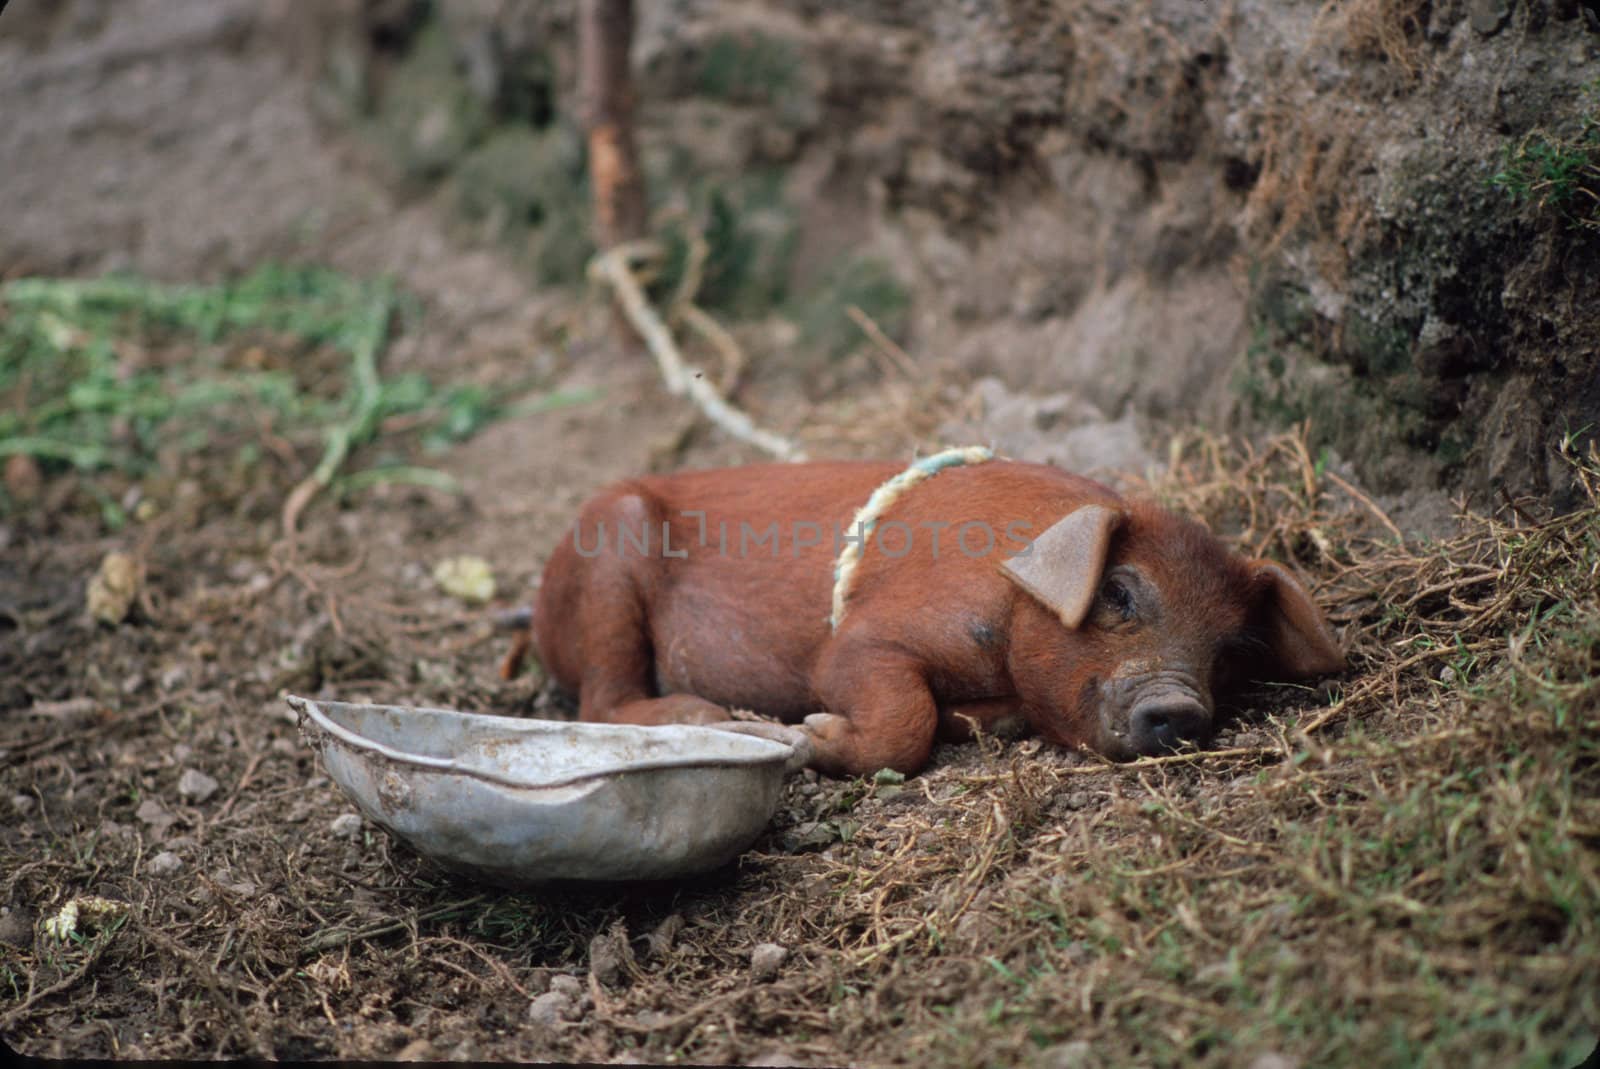 Pig sleeping in rural Ecuador